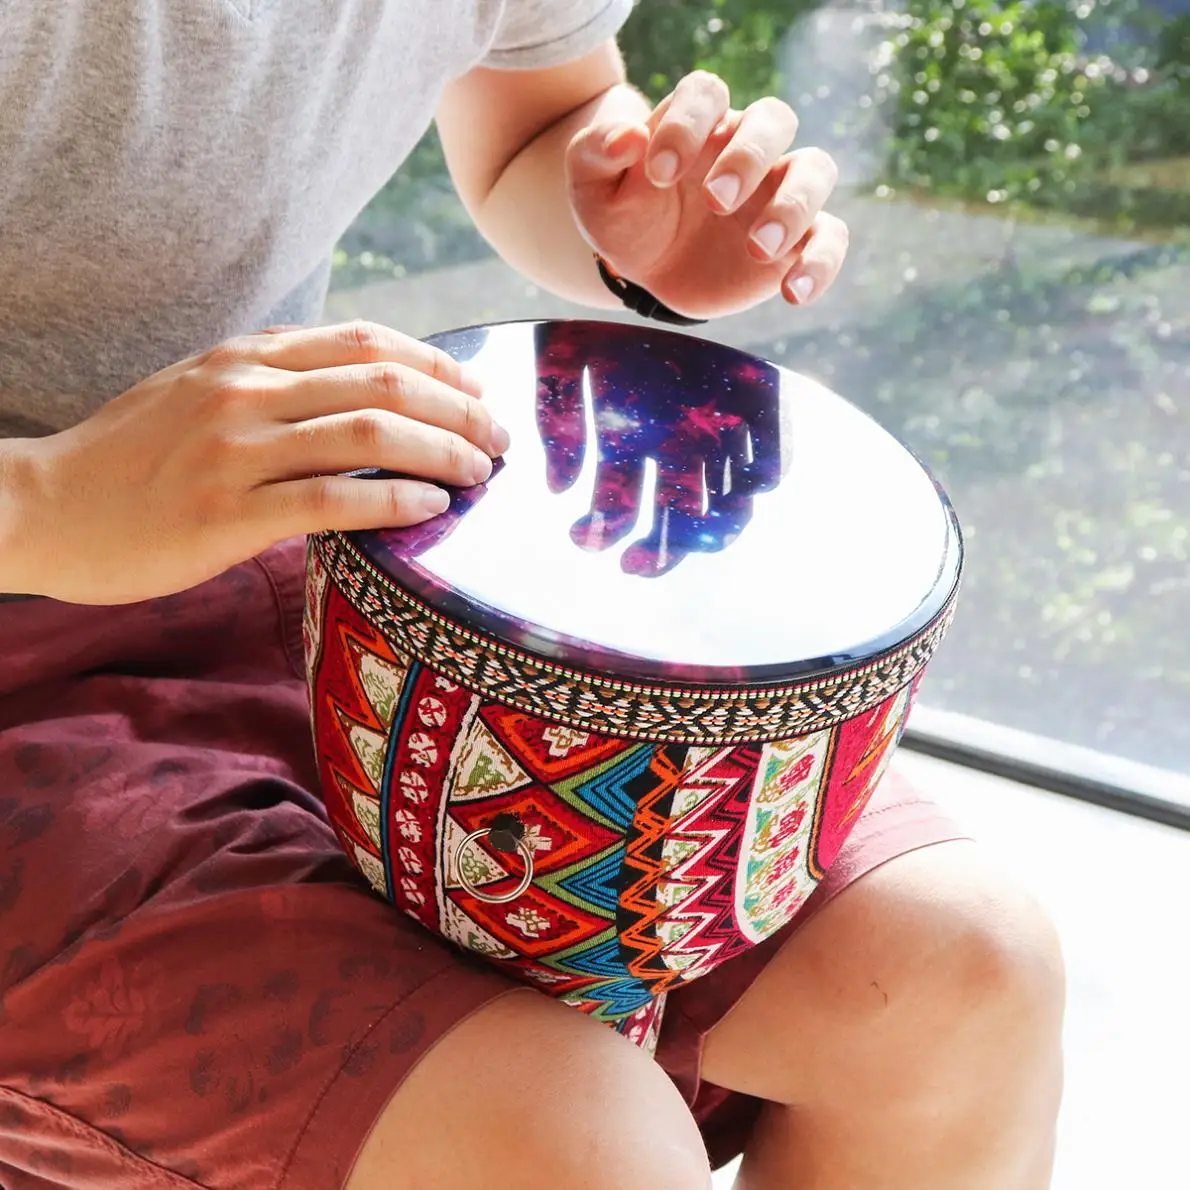 8 дюймов Африканский Djembe барабан красочные ткани искусство ABS баррель ПВХ звездное небо кожи детей ручной барабан Djembe барабаны